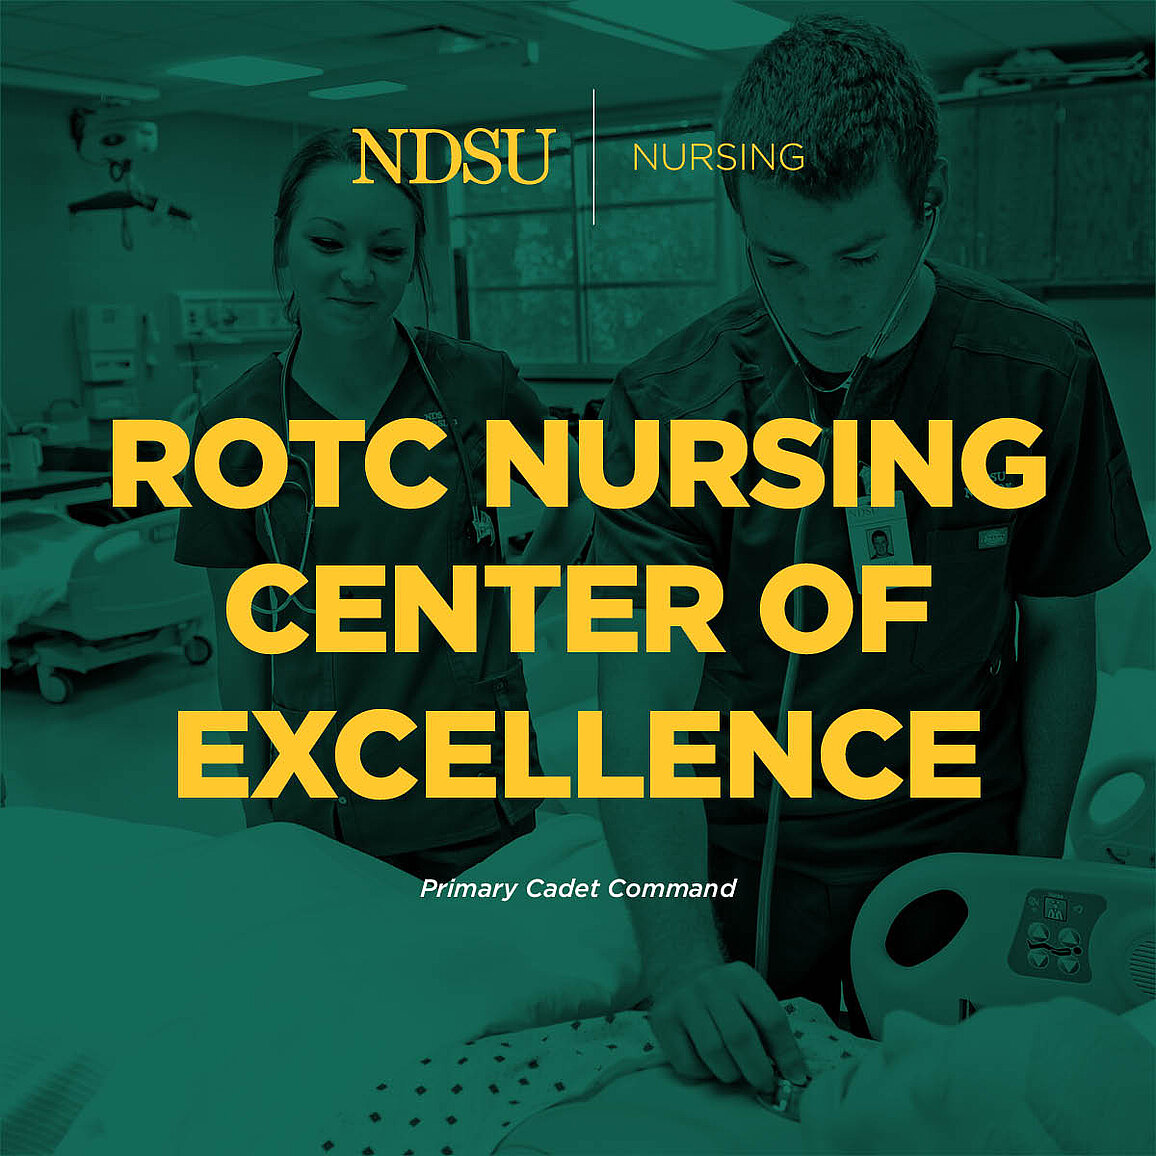 Nursing ROTC image links to story